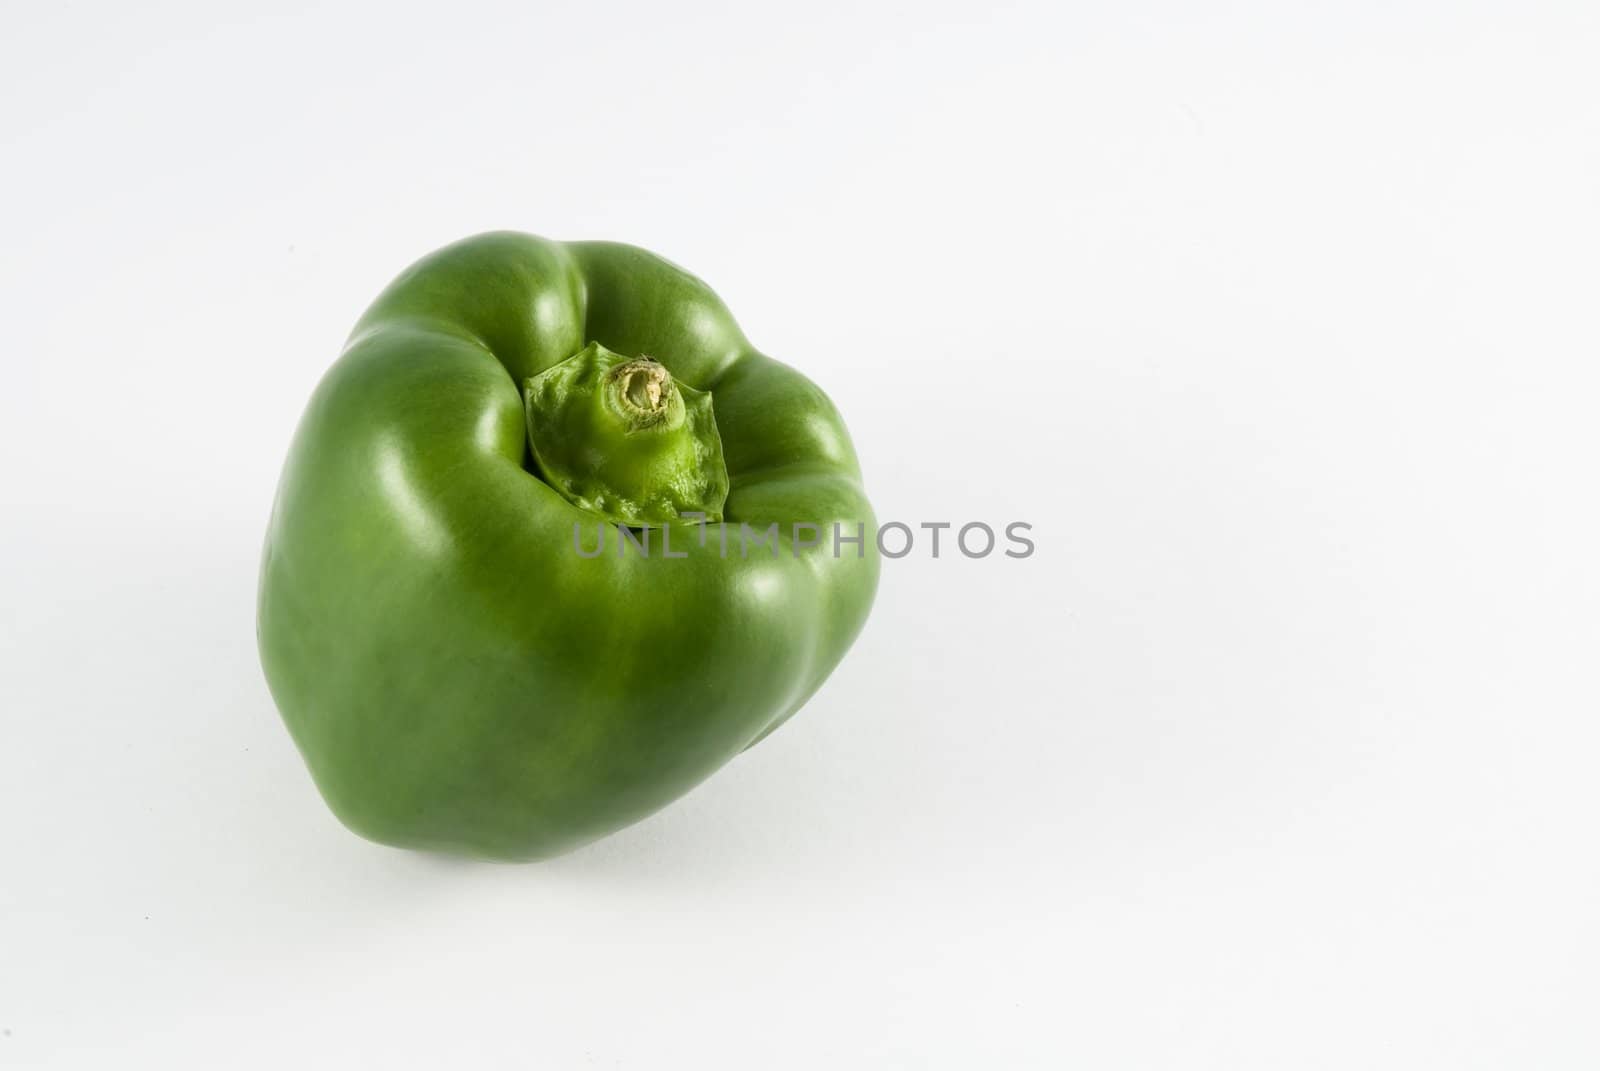 Single green pepper against white background